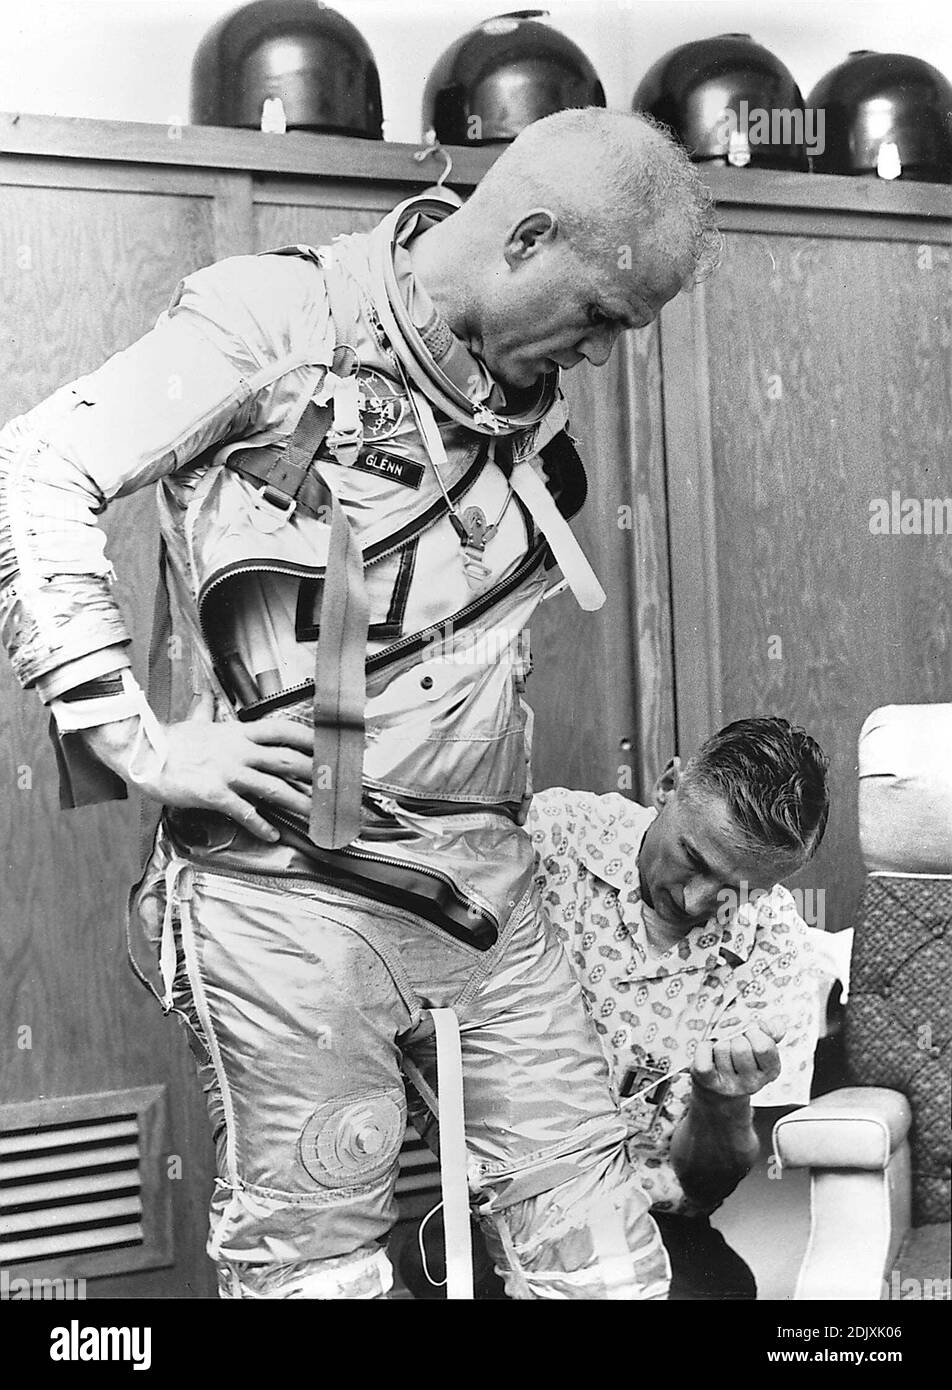 Washington, DC - 19. April 1998 -- Astronaut John H. Glenn, Jr. wird von Joe W. Schmitt unterstützt, der sich in der Praxis für die Perparation der Mercury-Atlas 6 (MA-6) Mission eignet, auf dem Foto, das am 5. Februar 1962 in Cape Canaveral, Florida aufgenommen wurde. Foto von NASA / CNP/ABACAPRESS.COM Stockfoto